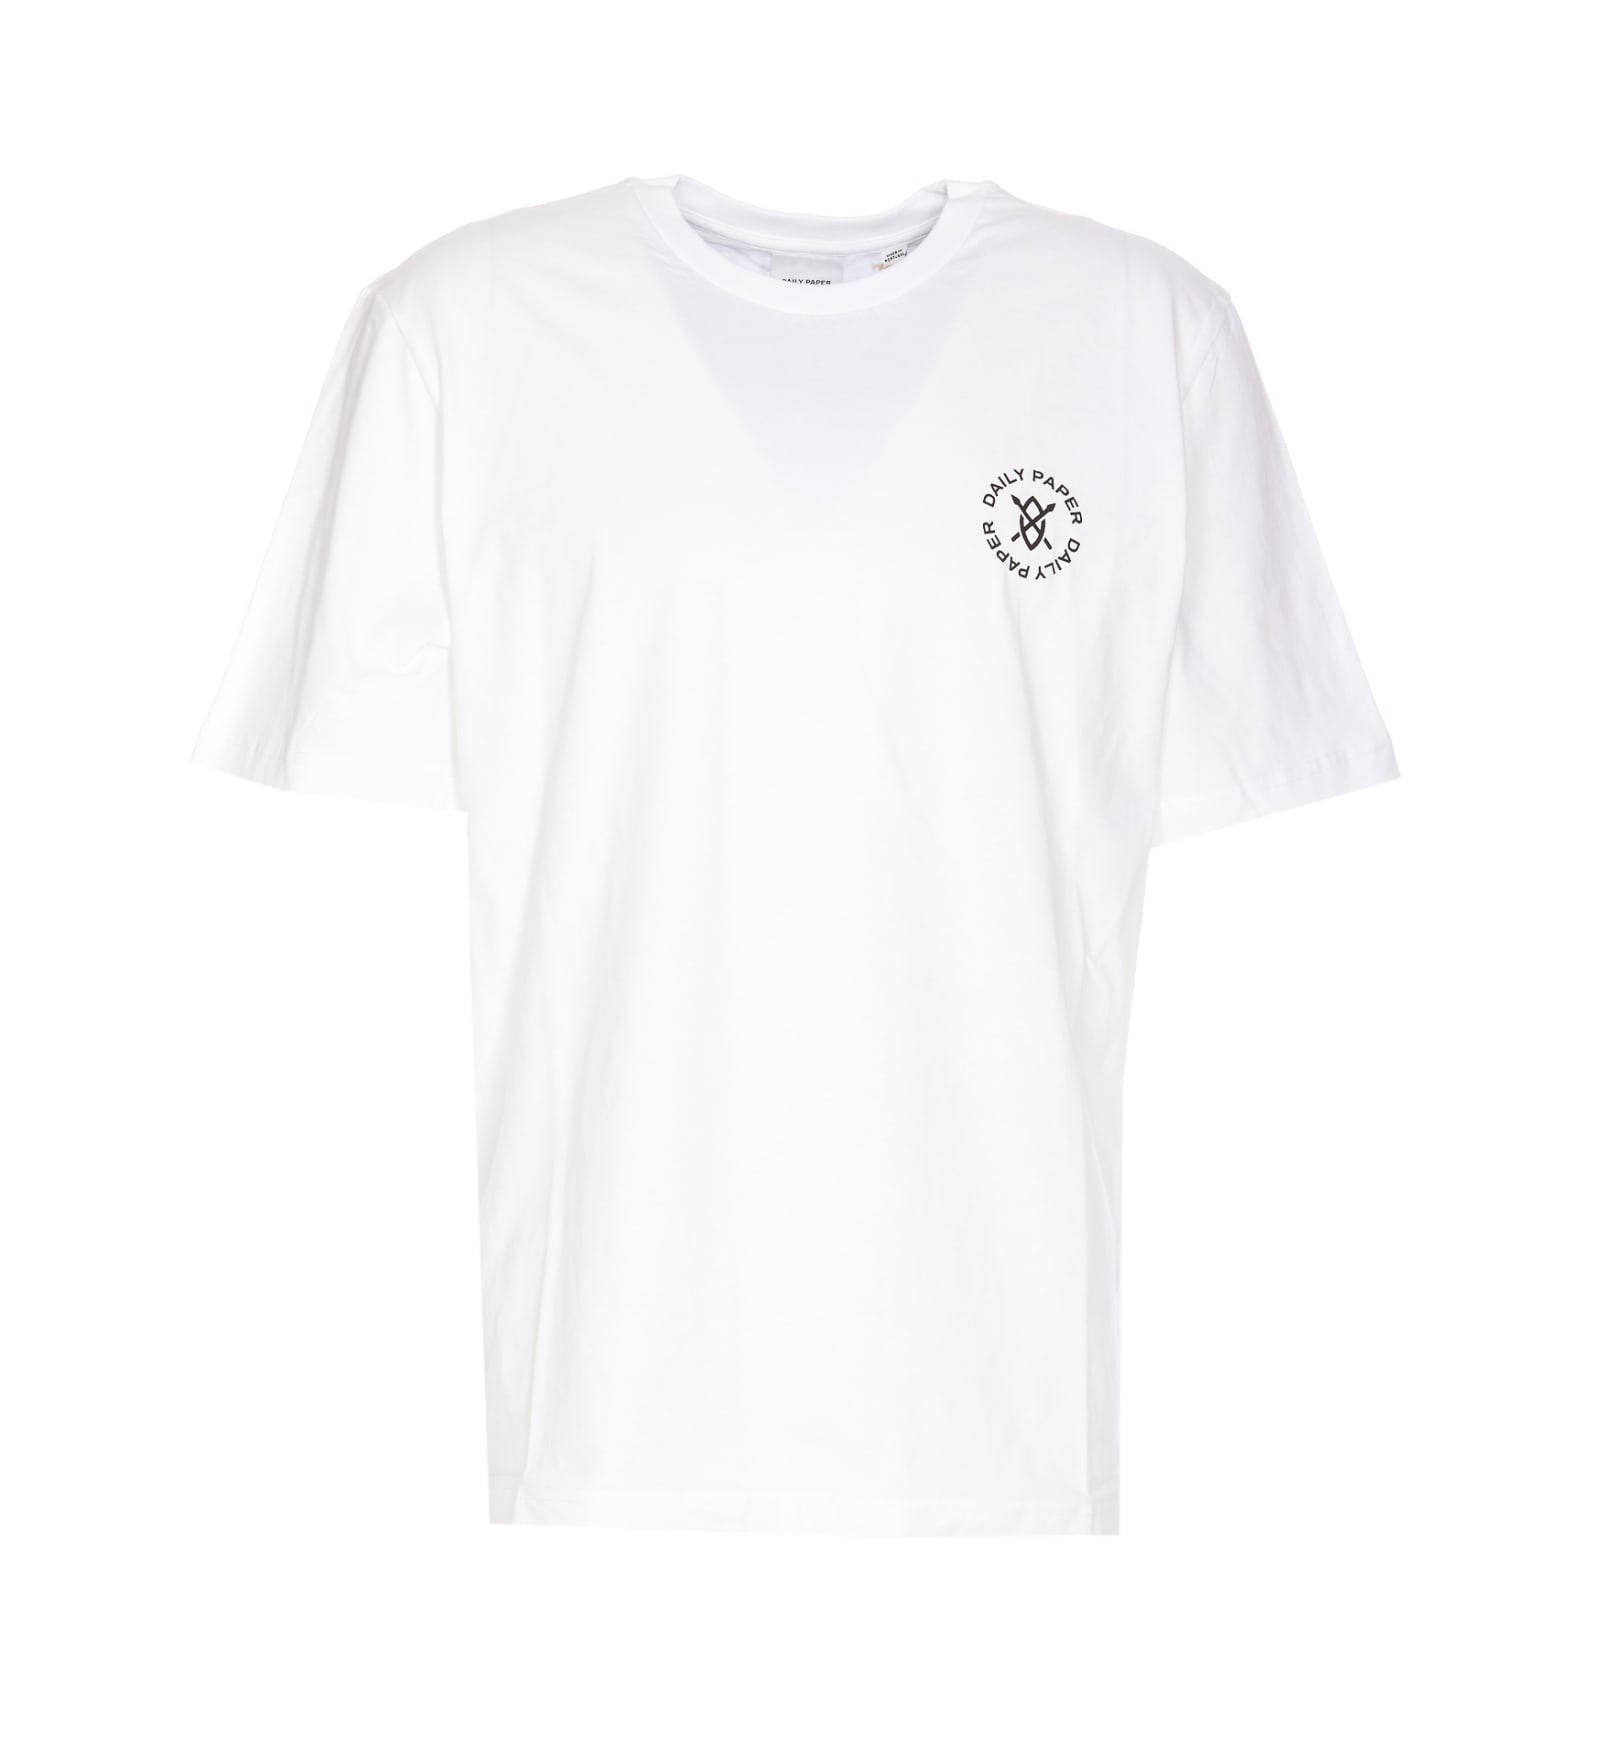 Circle T-shirt